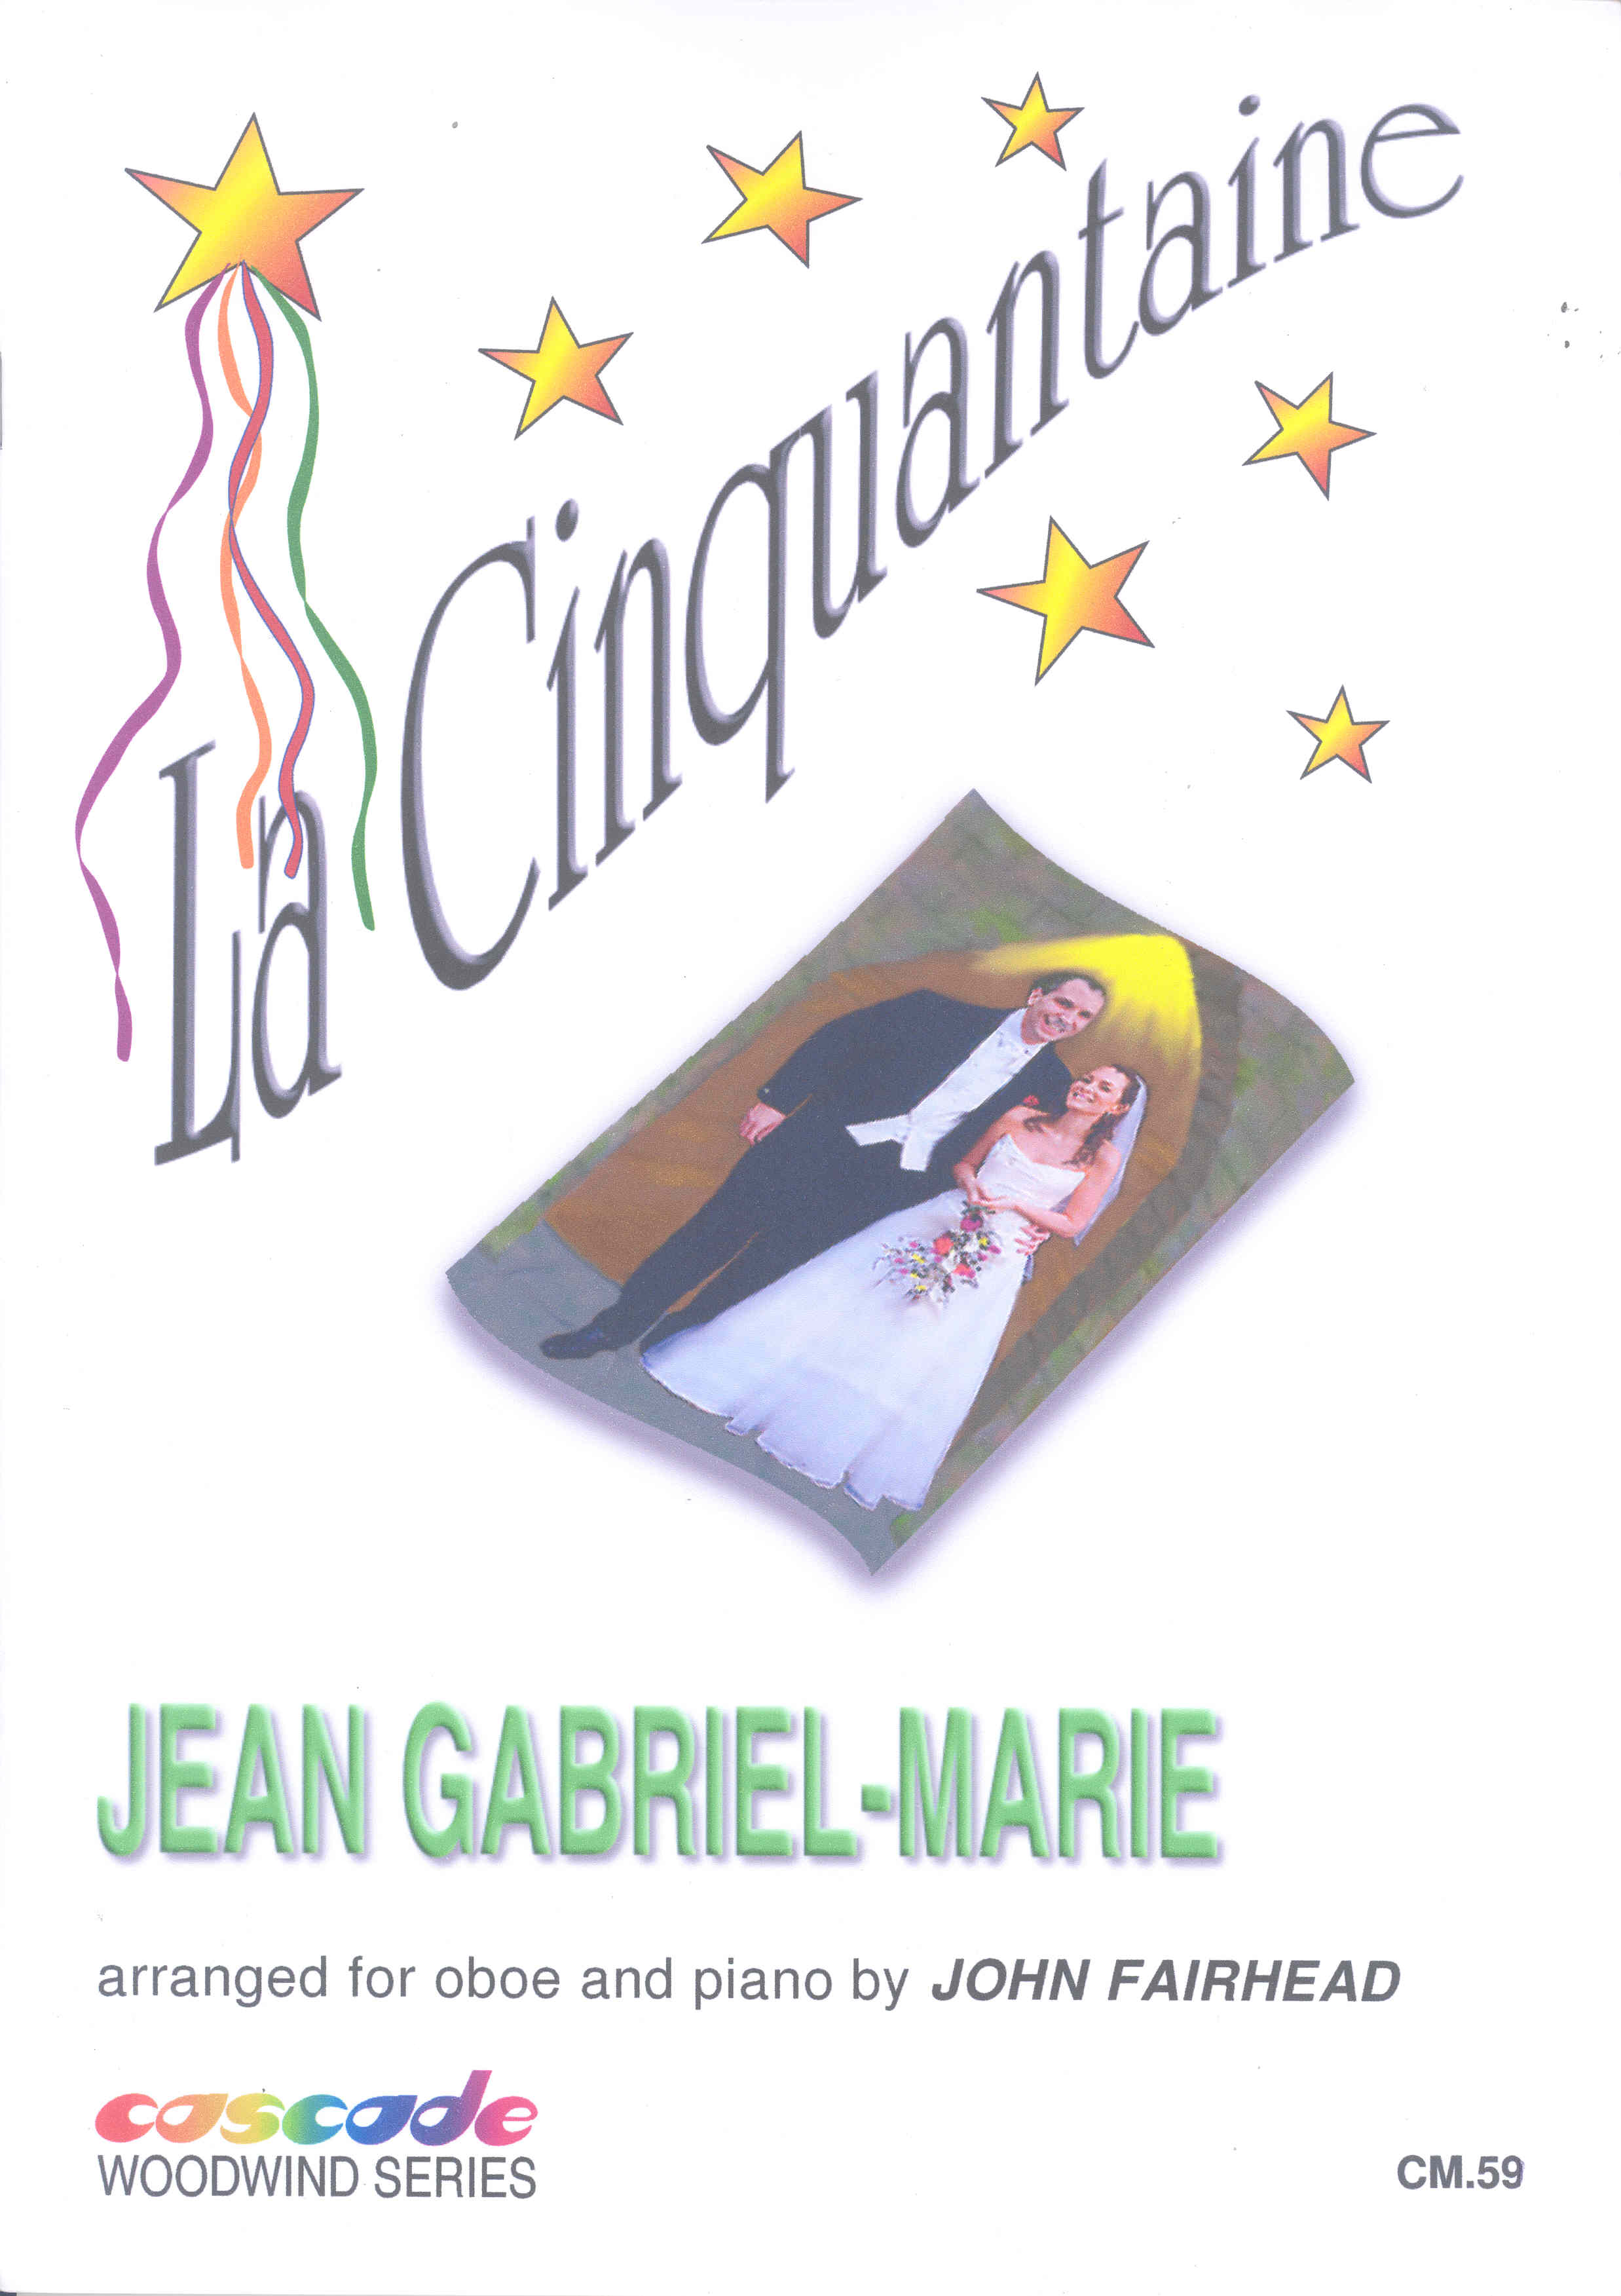 Gabriel-marie La Cinquantaine Oboe & Piano Sheet Music Songbook